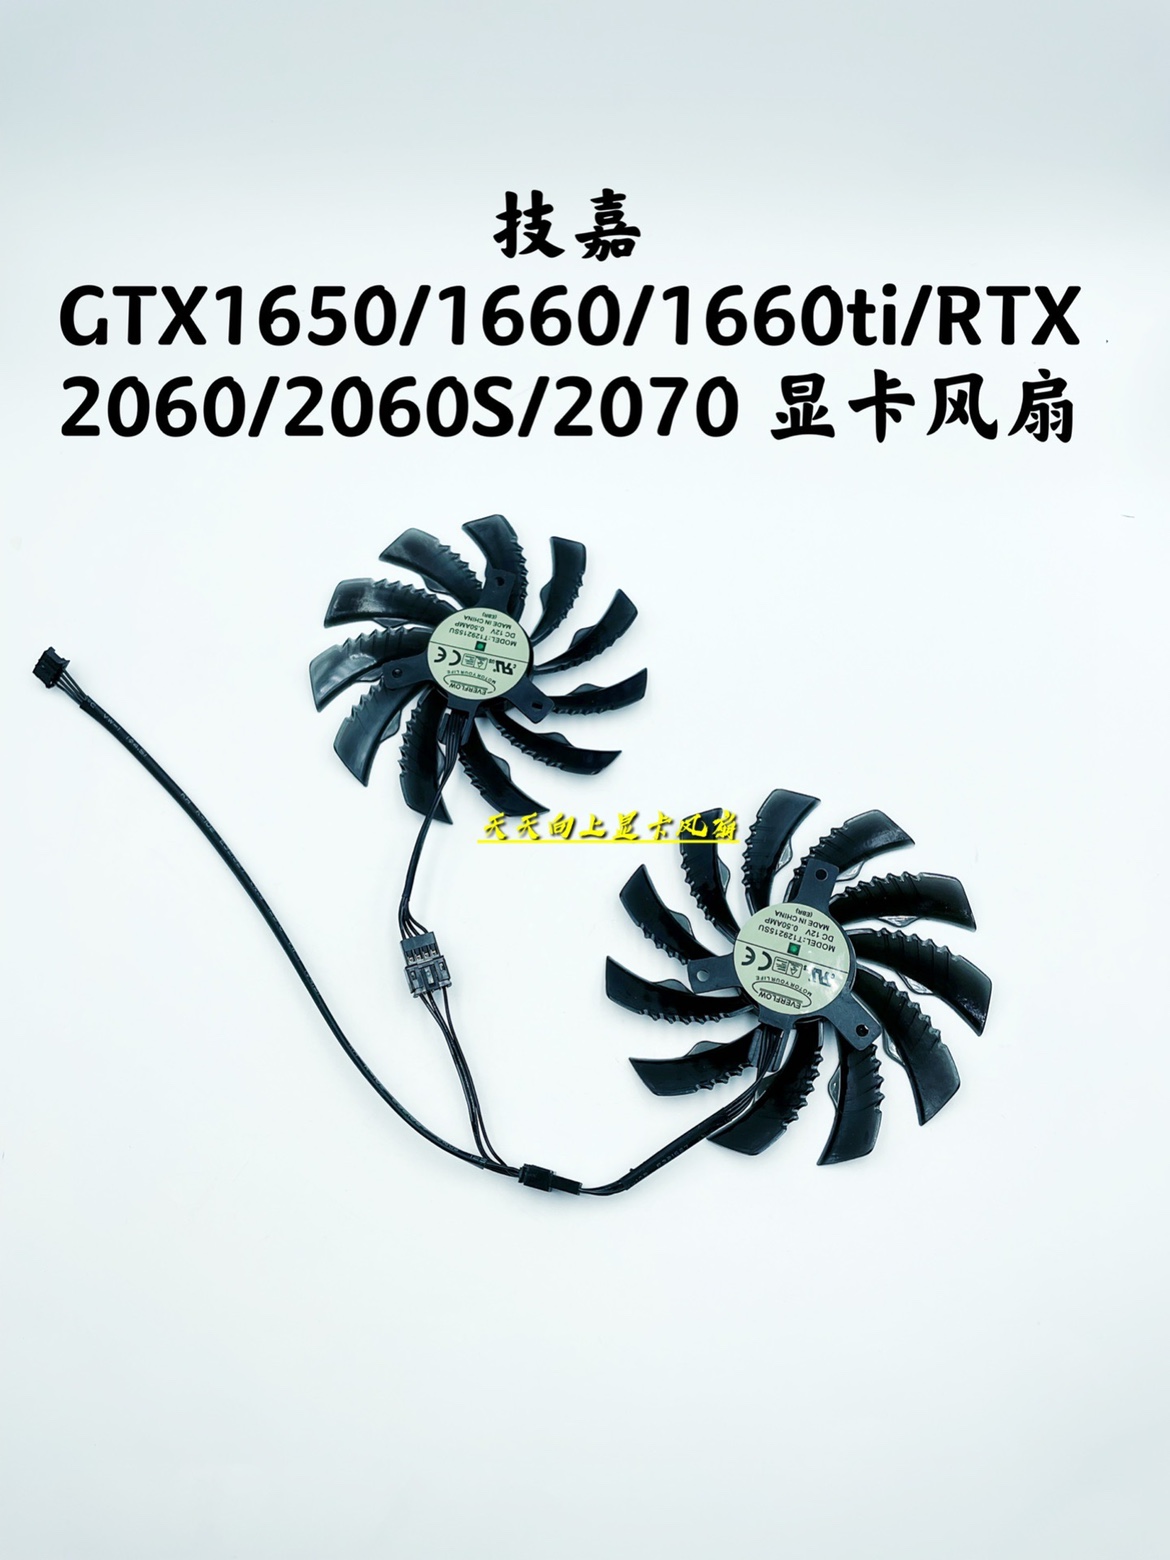 技嘉 GTX1650/1660/1660ti/RTX 2060/2060S/2070 显卡静音风扇 - 图1